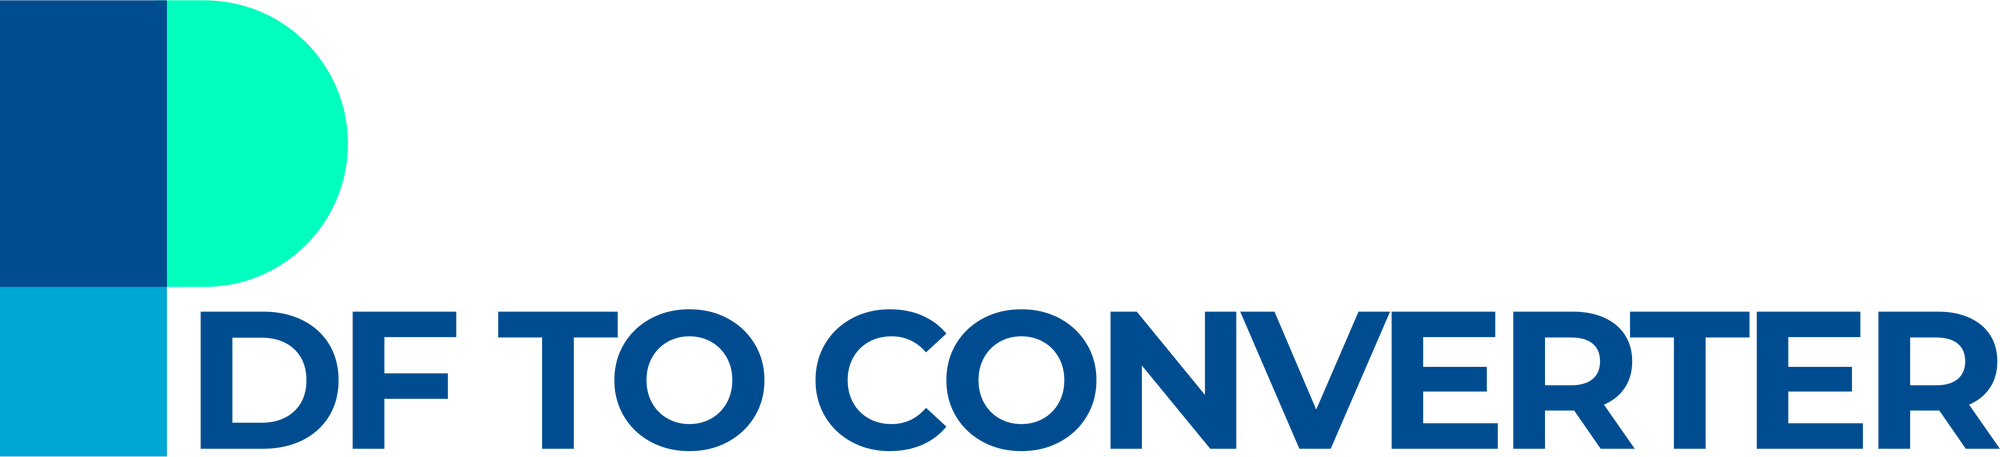 PDFConverter-logo